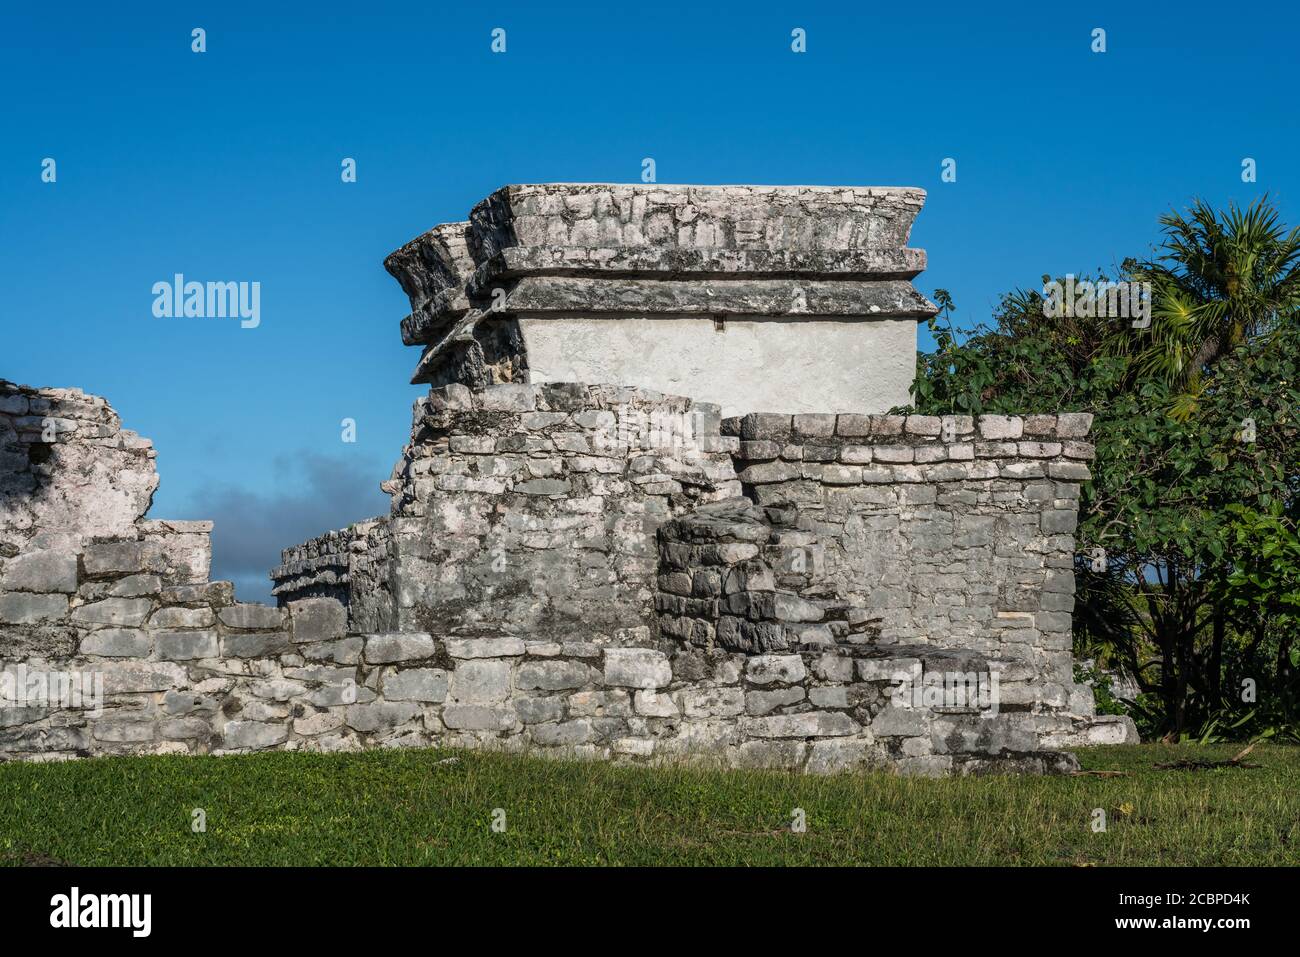 Le Temple du Dieu Diving ou Dieu descendant dans les ruines de la ville maya de Tulum sur la côte de la mer des Caraïbes. Parc national de Tulum, Quint Banque D'Images